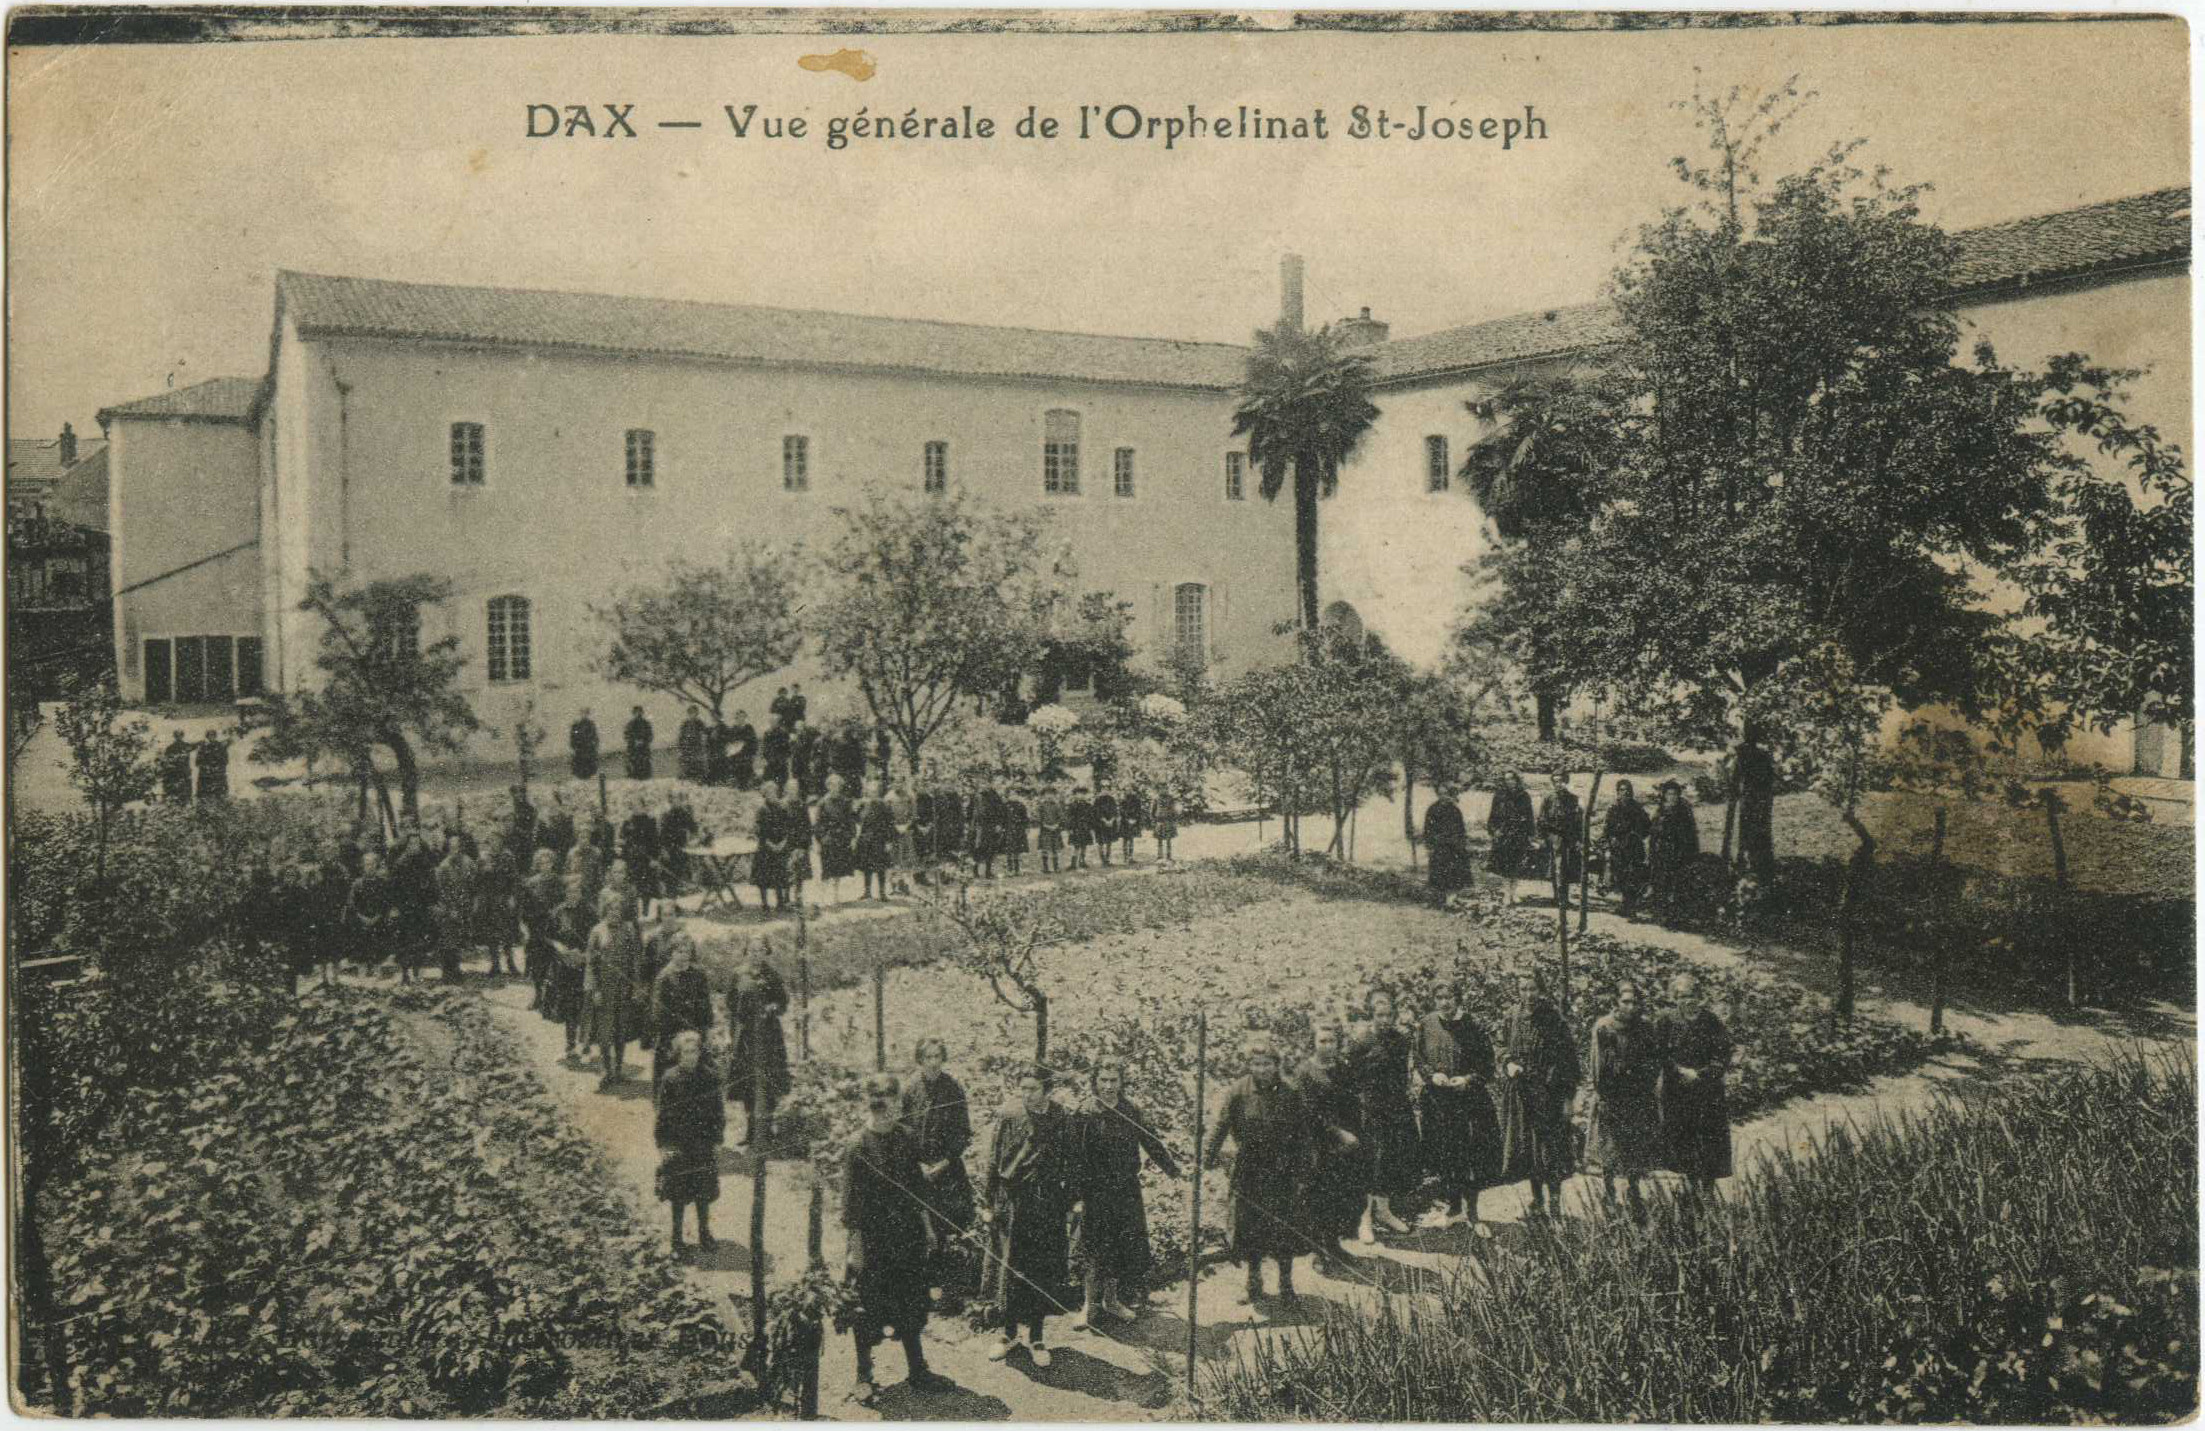 Dax - Vue générale de l'Orphelinat St-Joseph